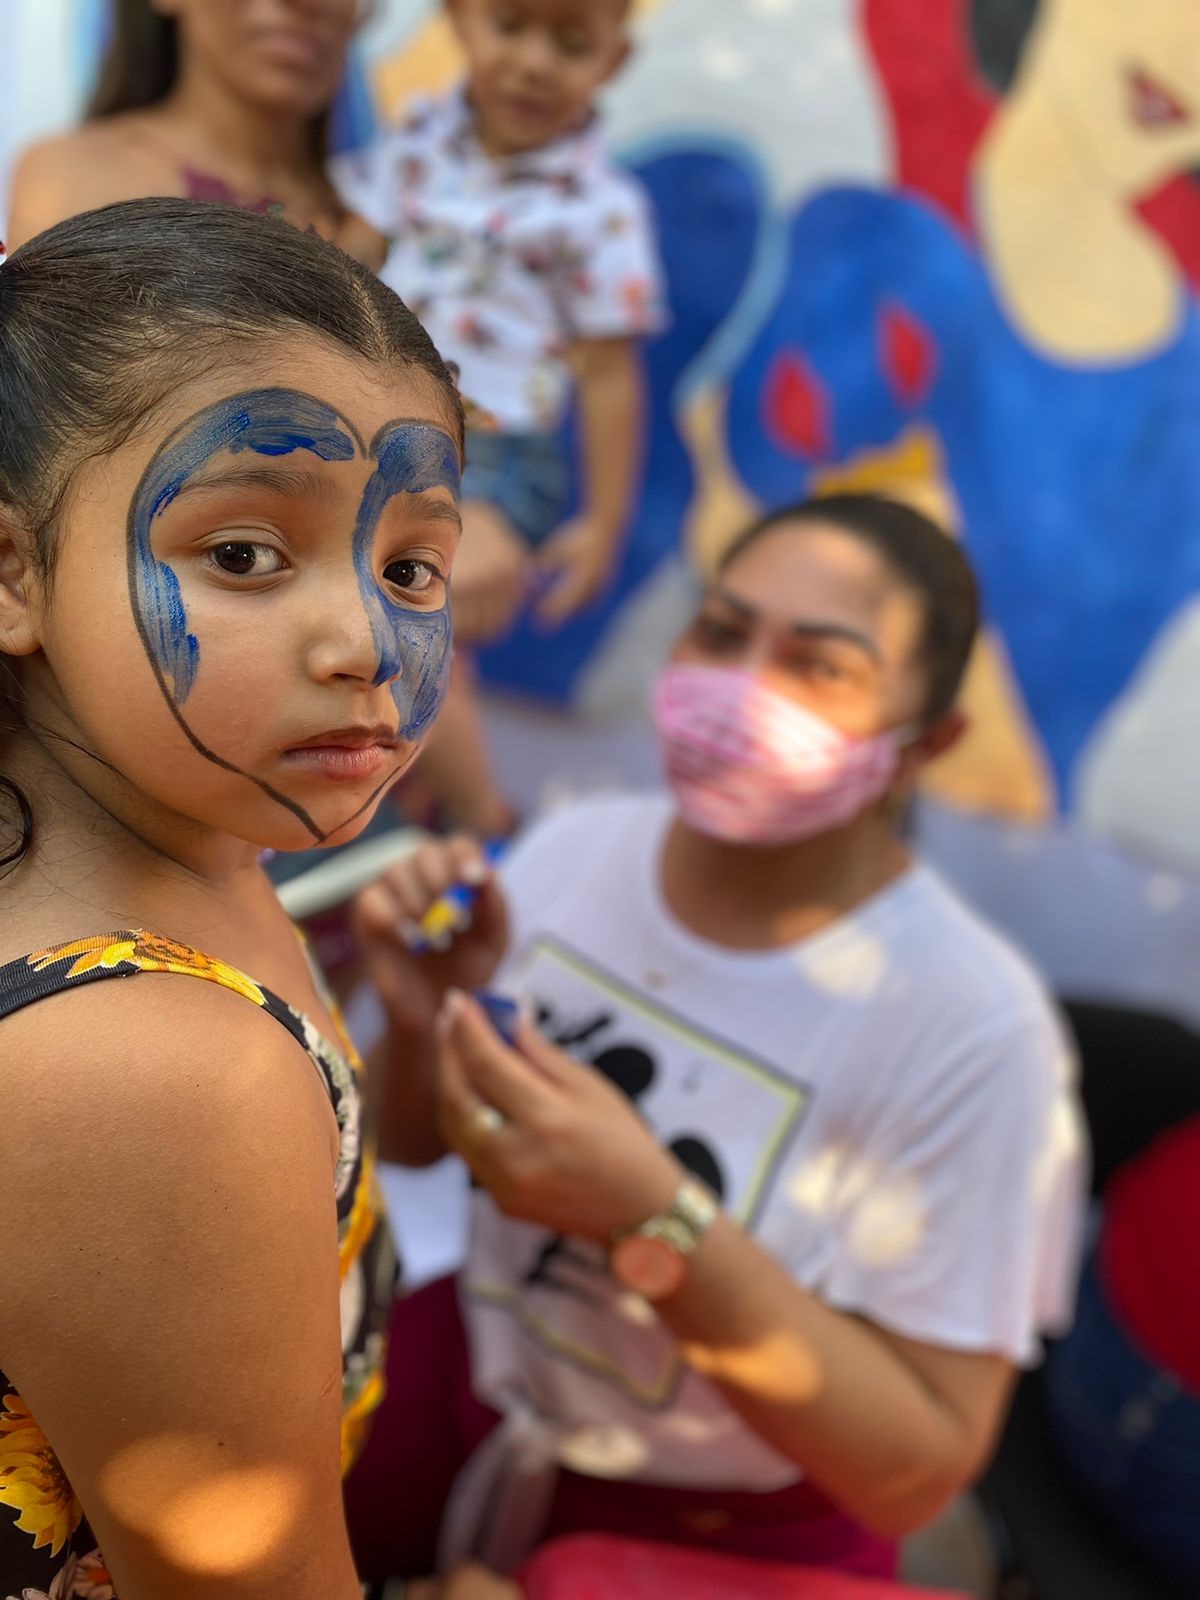 ceninha3 1 - Prefeitura de Bonito de Santa Fé realizou com sucesso ações recreativas em comemoração ao Dia das Crianças